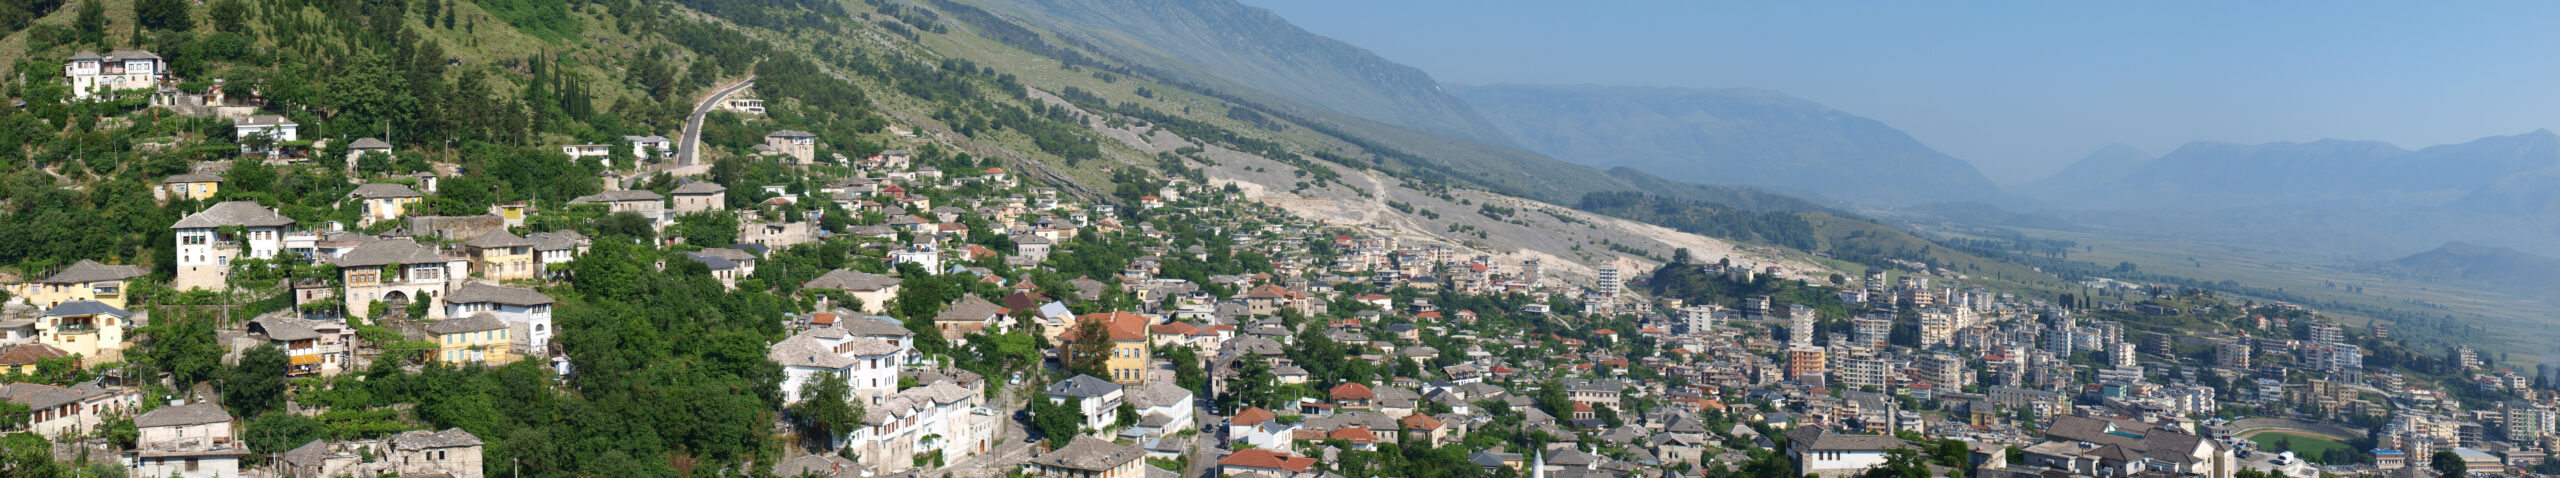 Wandelvakantie Albanië